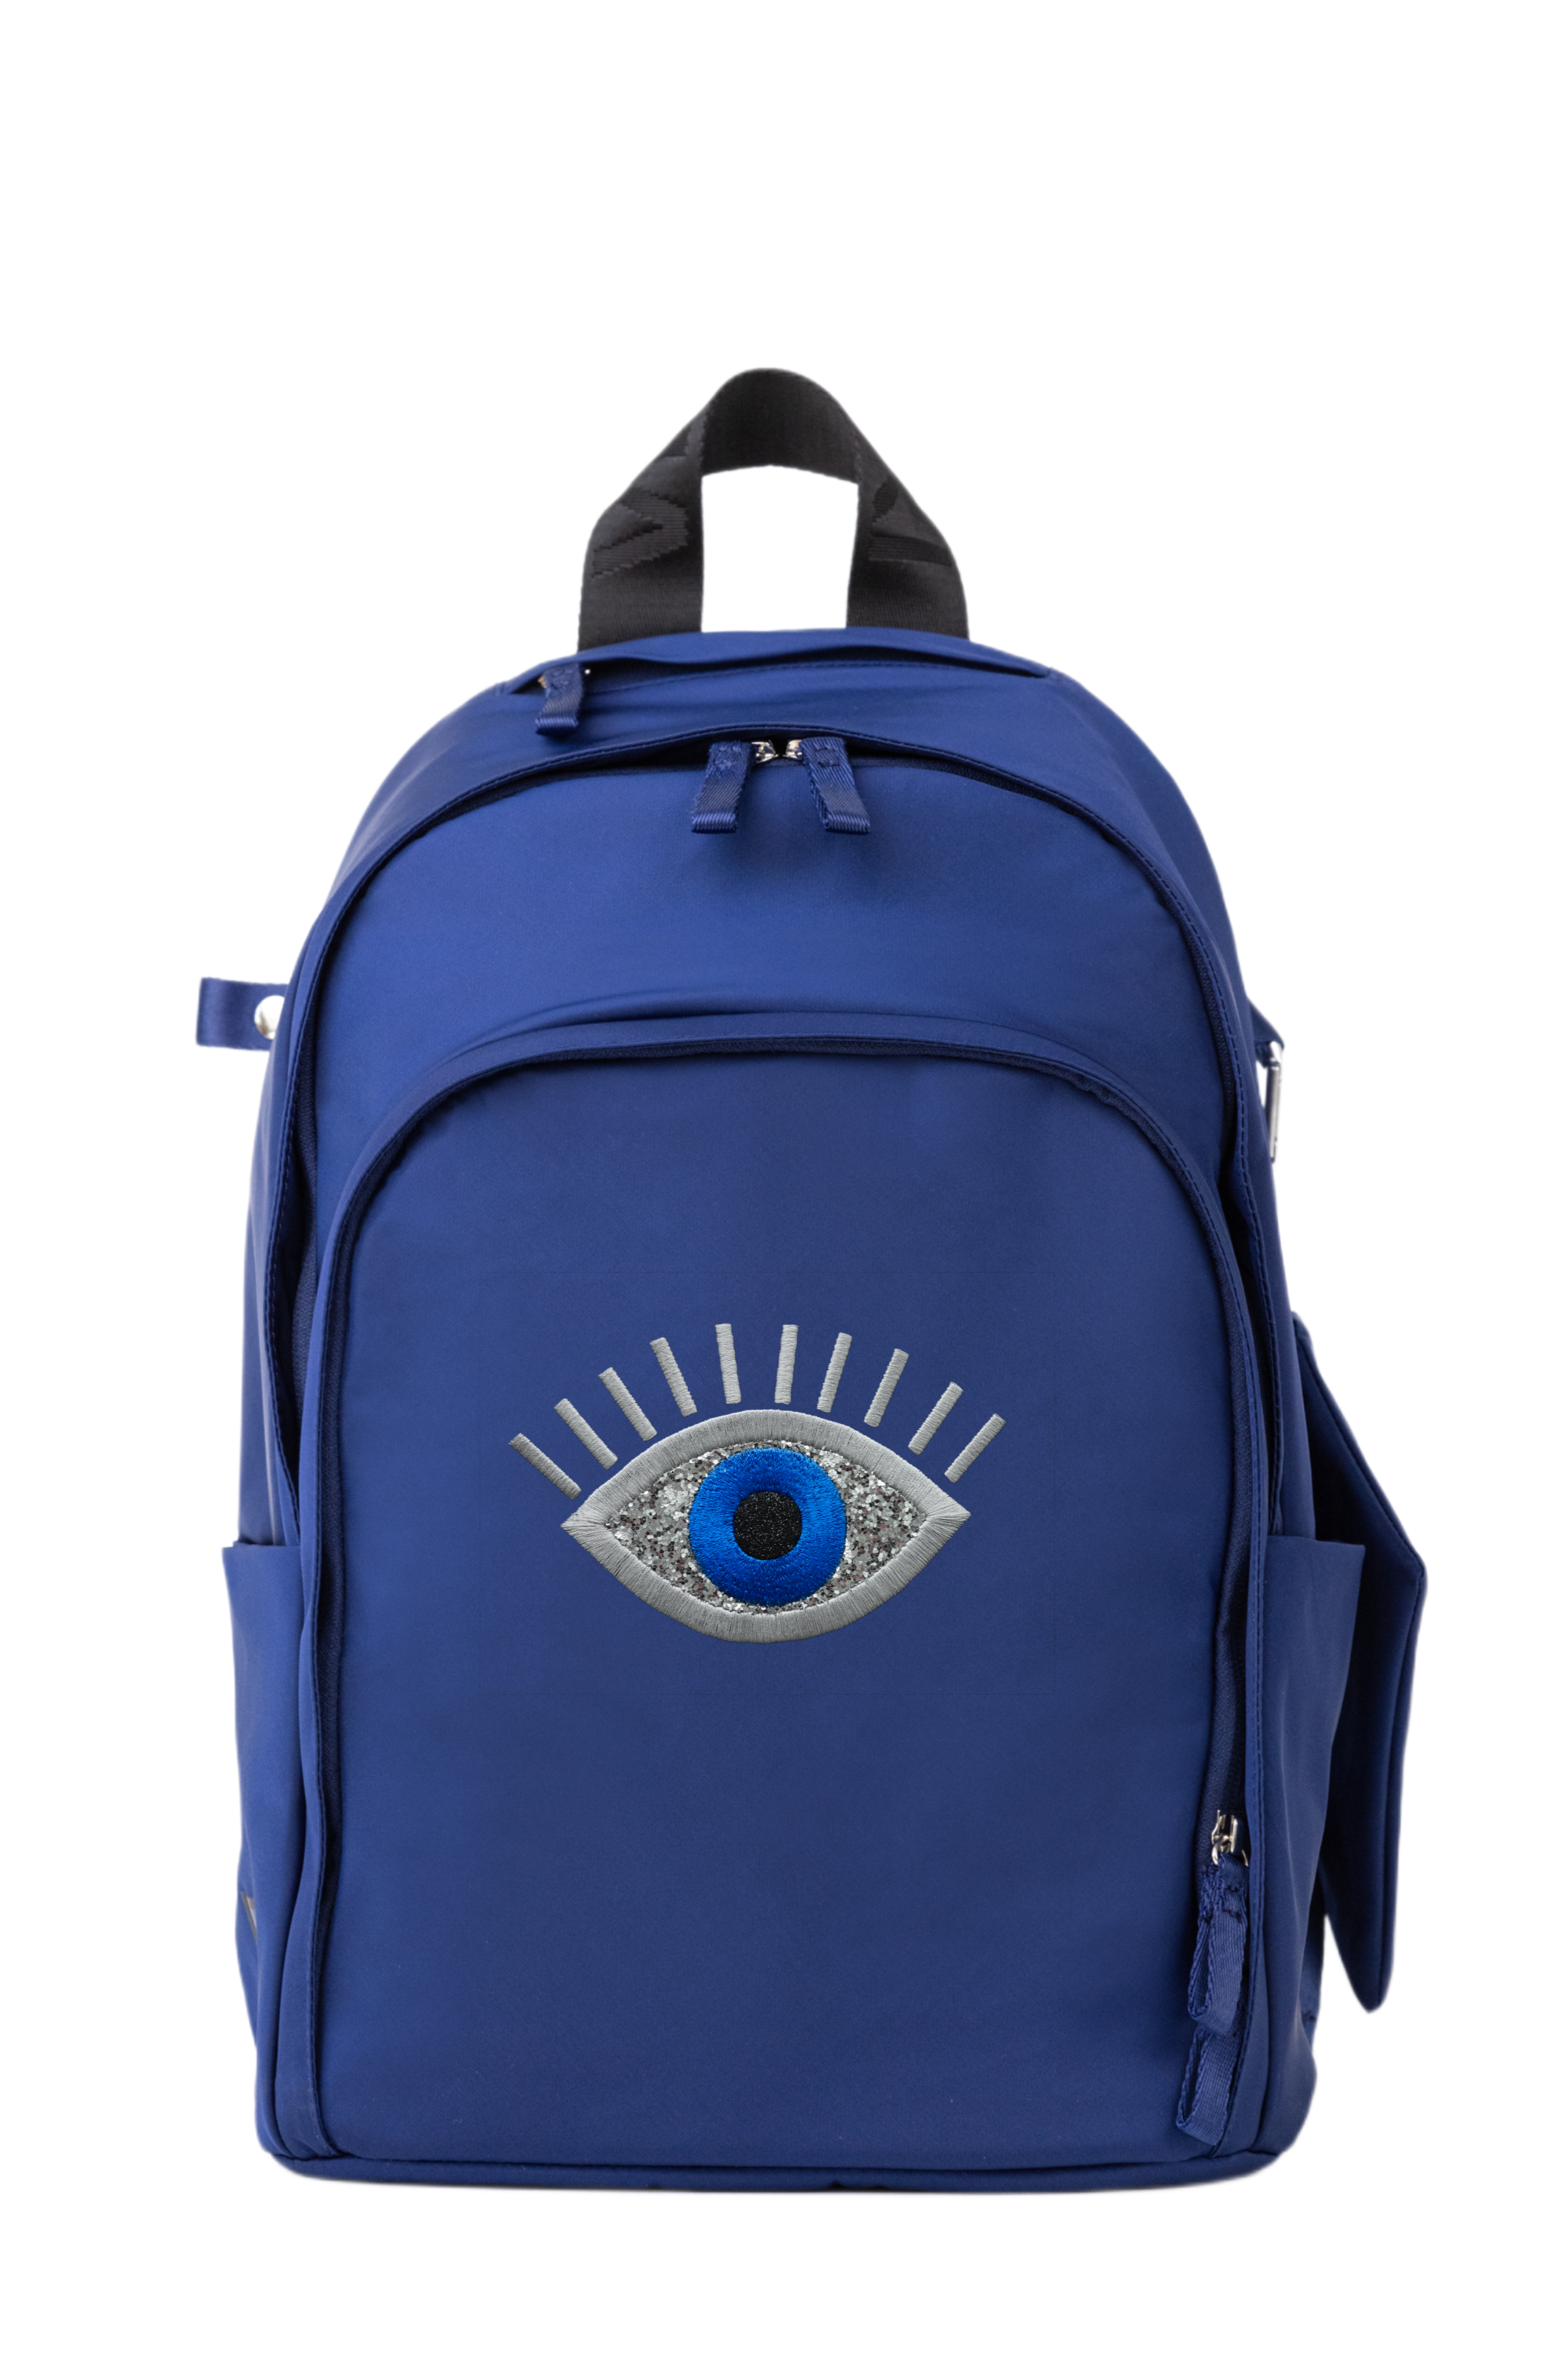 Novelty Backpack “Evil Eye”